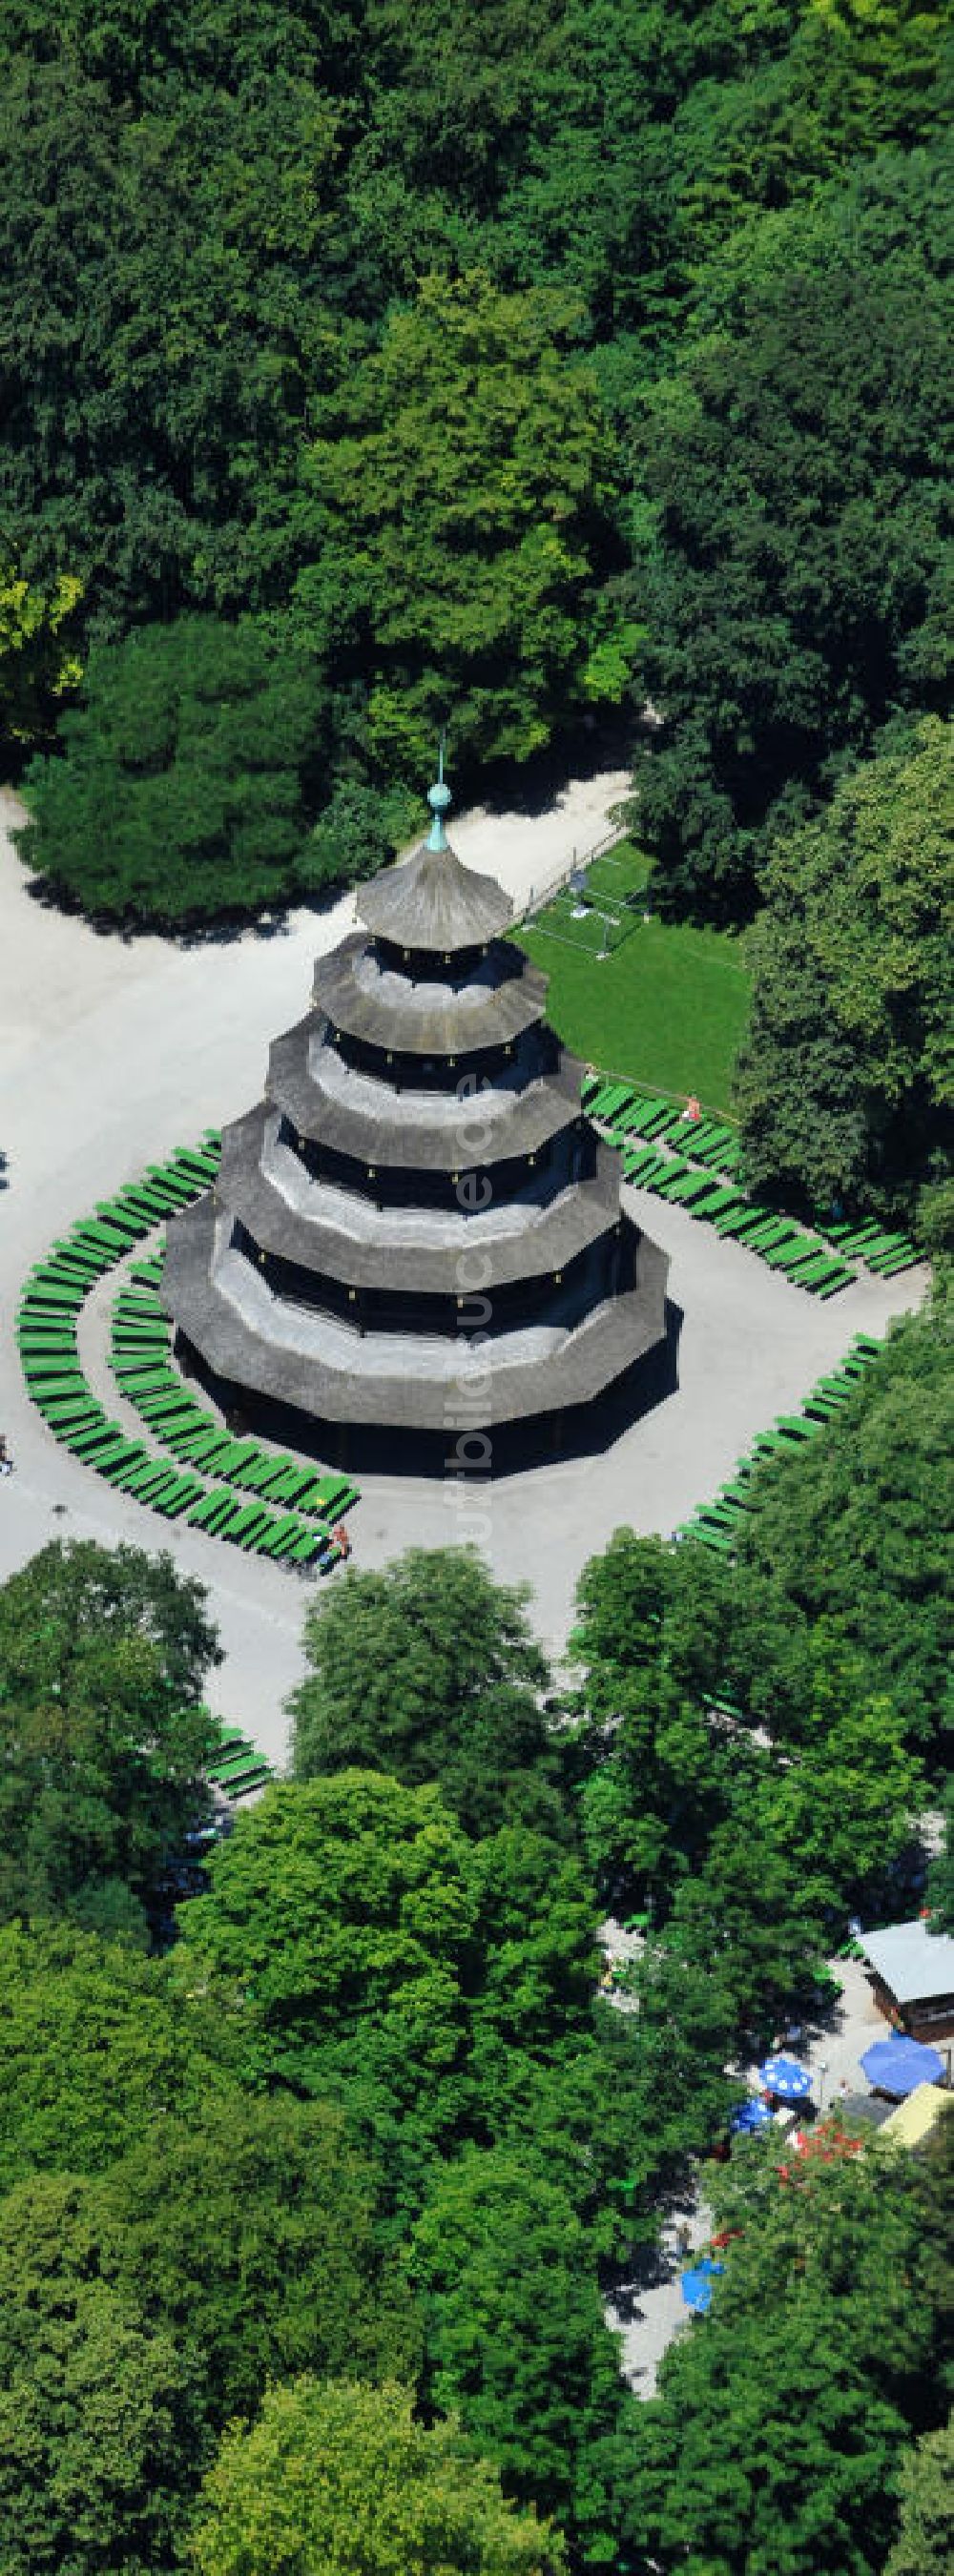 Luftaufnahme München - Der Chinesische Turm im Erholungspark Englischer Garten in München